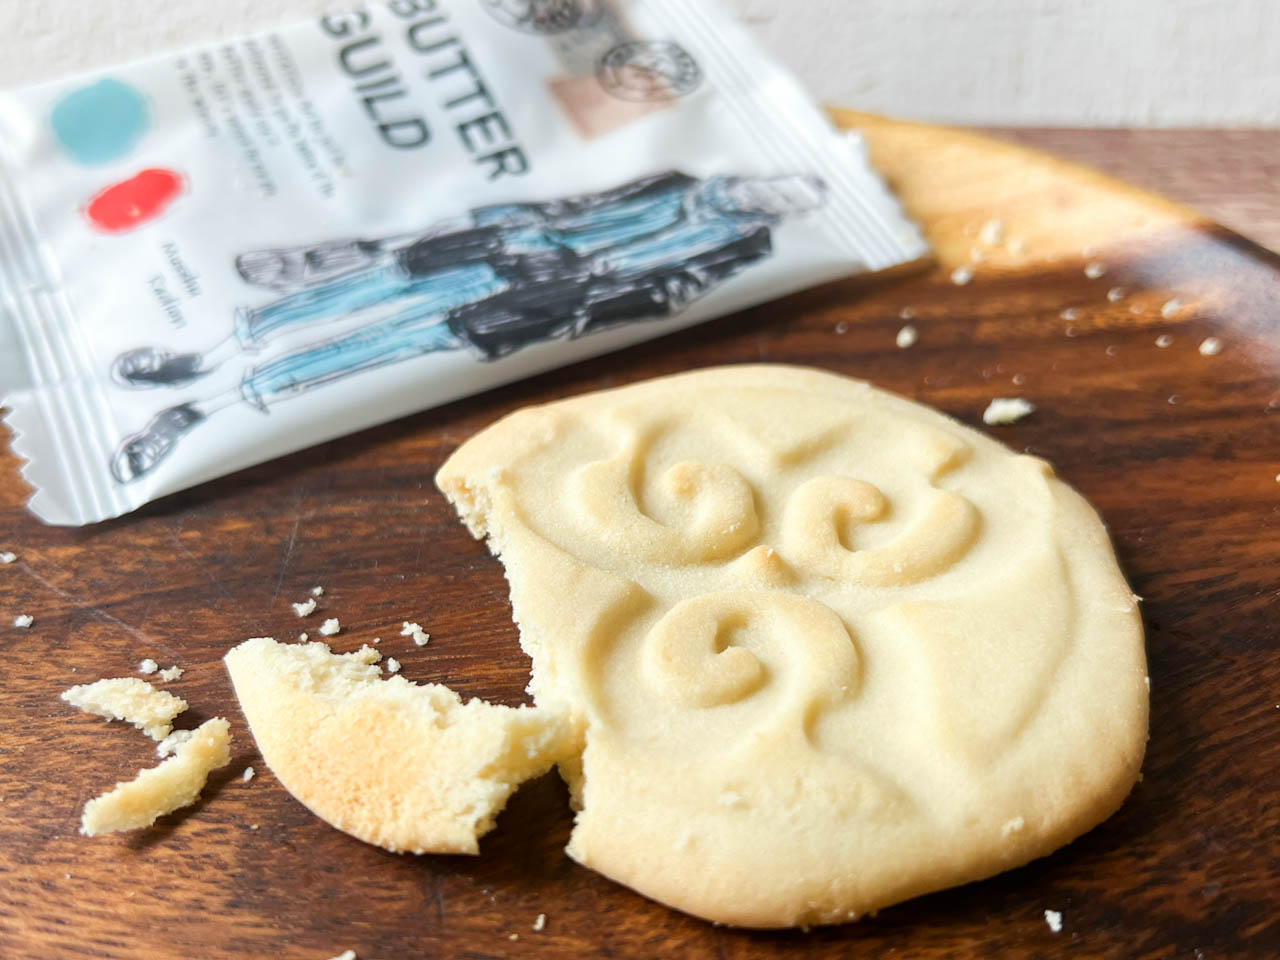 「バターギルド」は、独自の包餡圧縮製法による発酵バタークッキーと発酵バタークリームのDUAL構造で仕上げていて、ほろほろとやわらかい繊細なSALTY BUTTER WET COOKIES